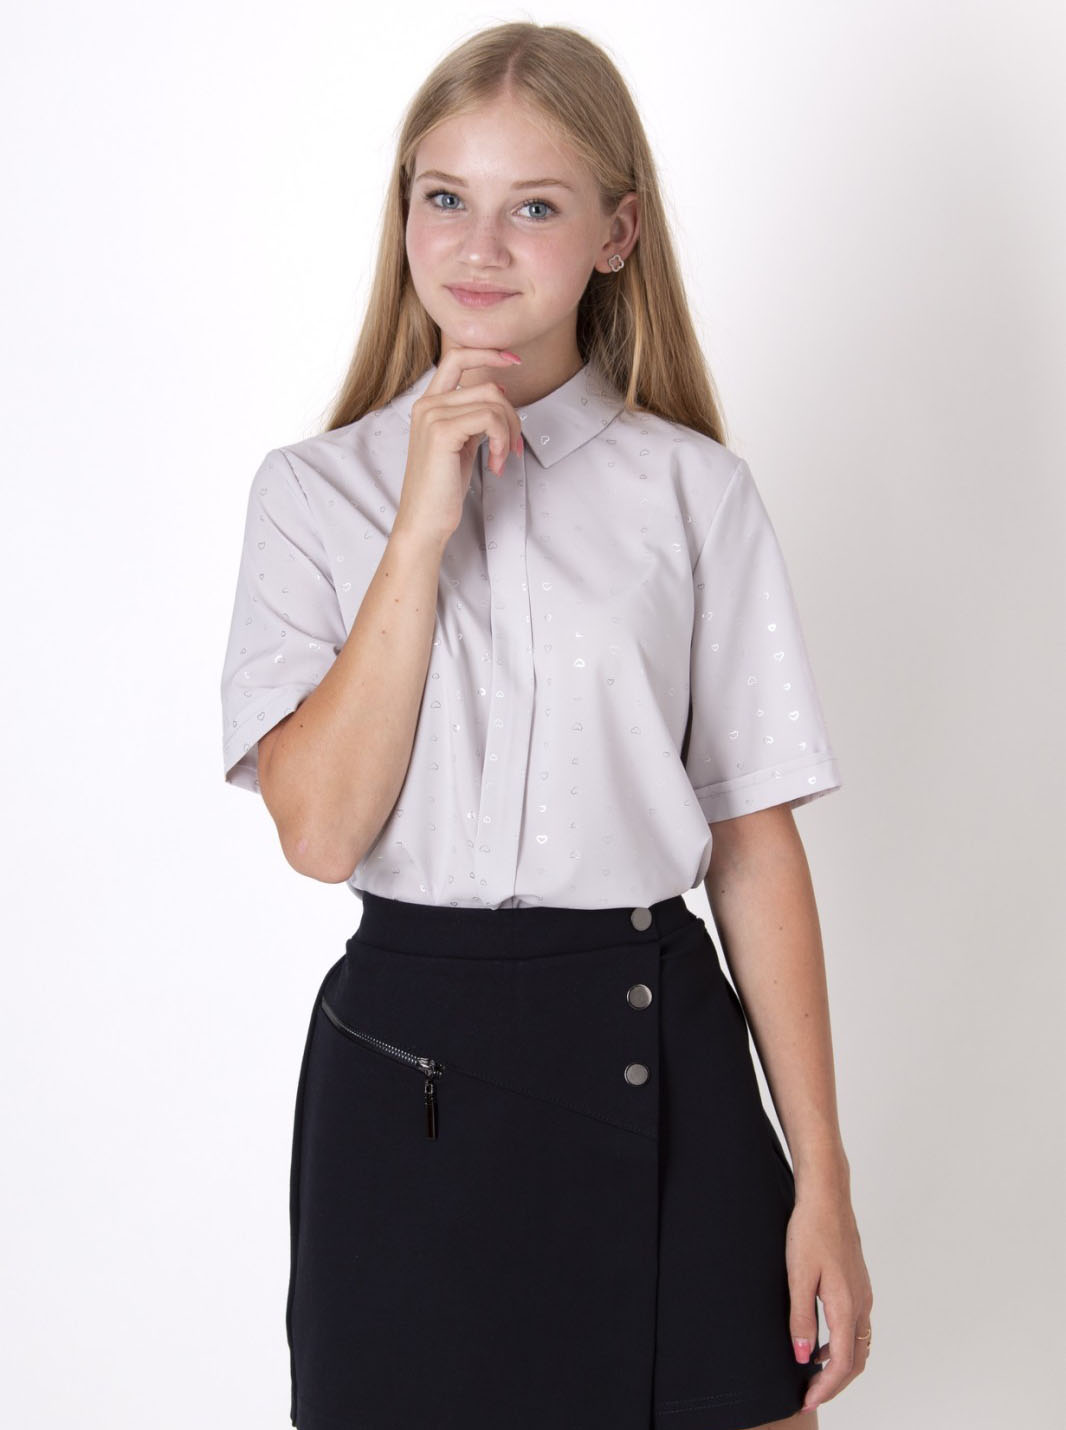 Блузка з коротким рукавом для дівчинки Mevis Сердечка сіра 2660-01 - ціна